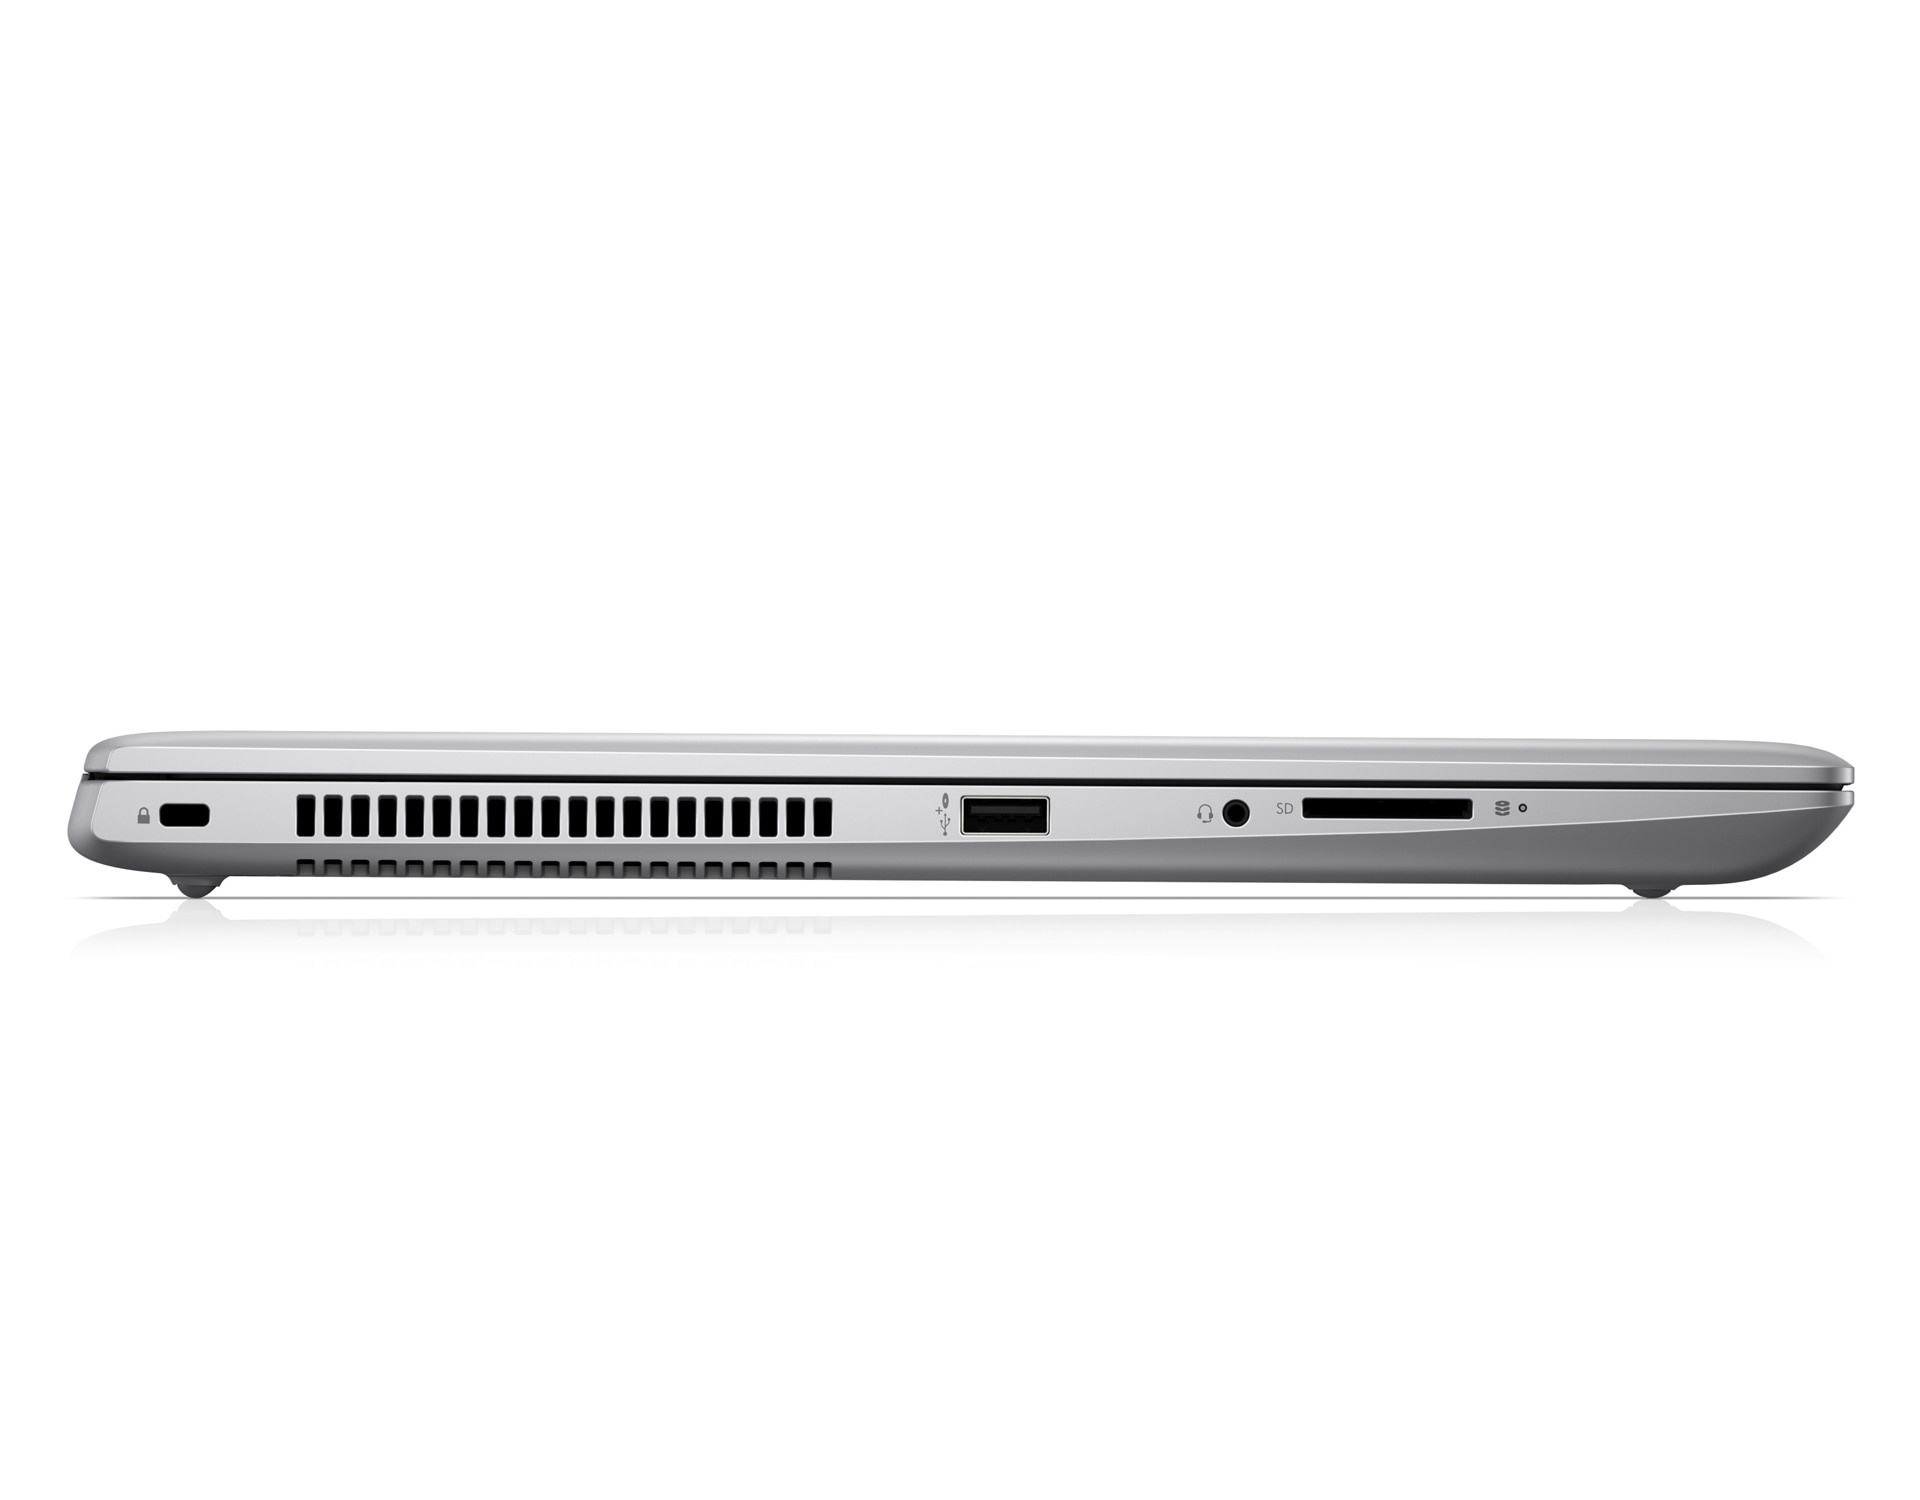 【大画面17.3インチ】 【高スペック】 HP ProBook 470 G5 第8世代 Core i7 7500U/2.70GHz 16GB HDD500GB Windows10 64bit WPSOffice 17.3インチ フルHD カメラ テンキー 無線LAN パソコン ノートパソコン PC Notebook